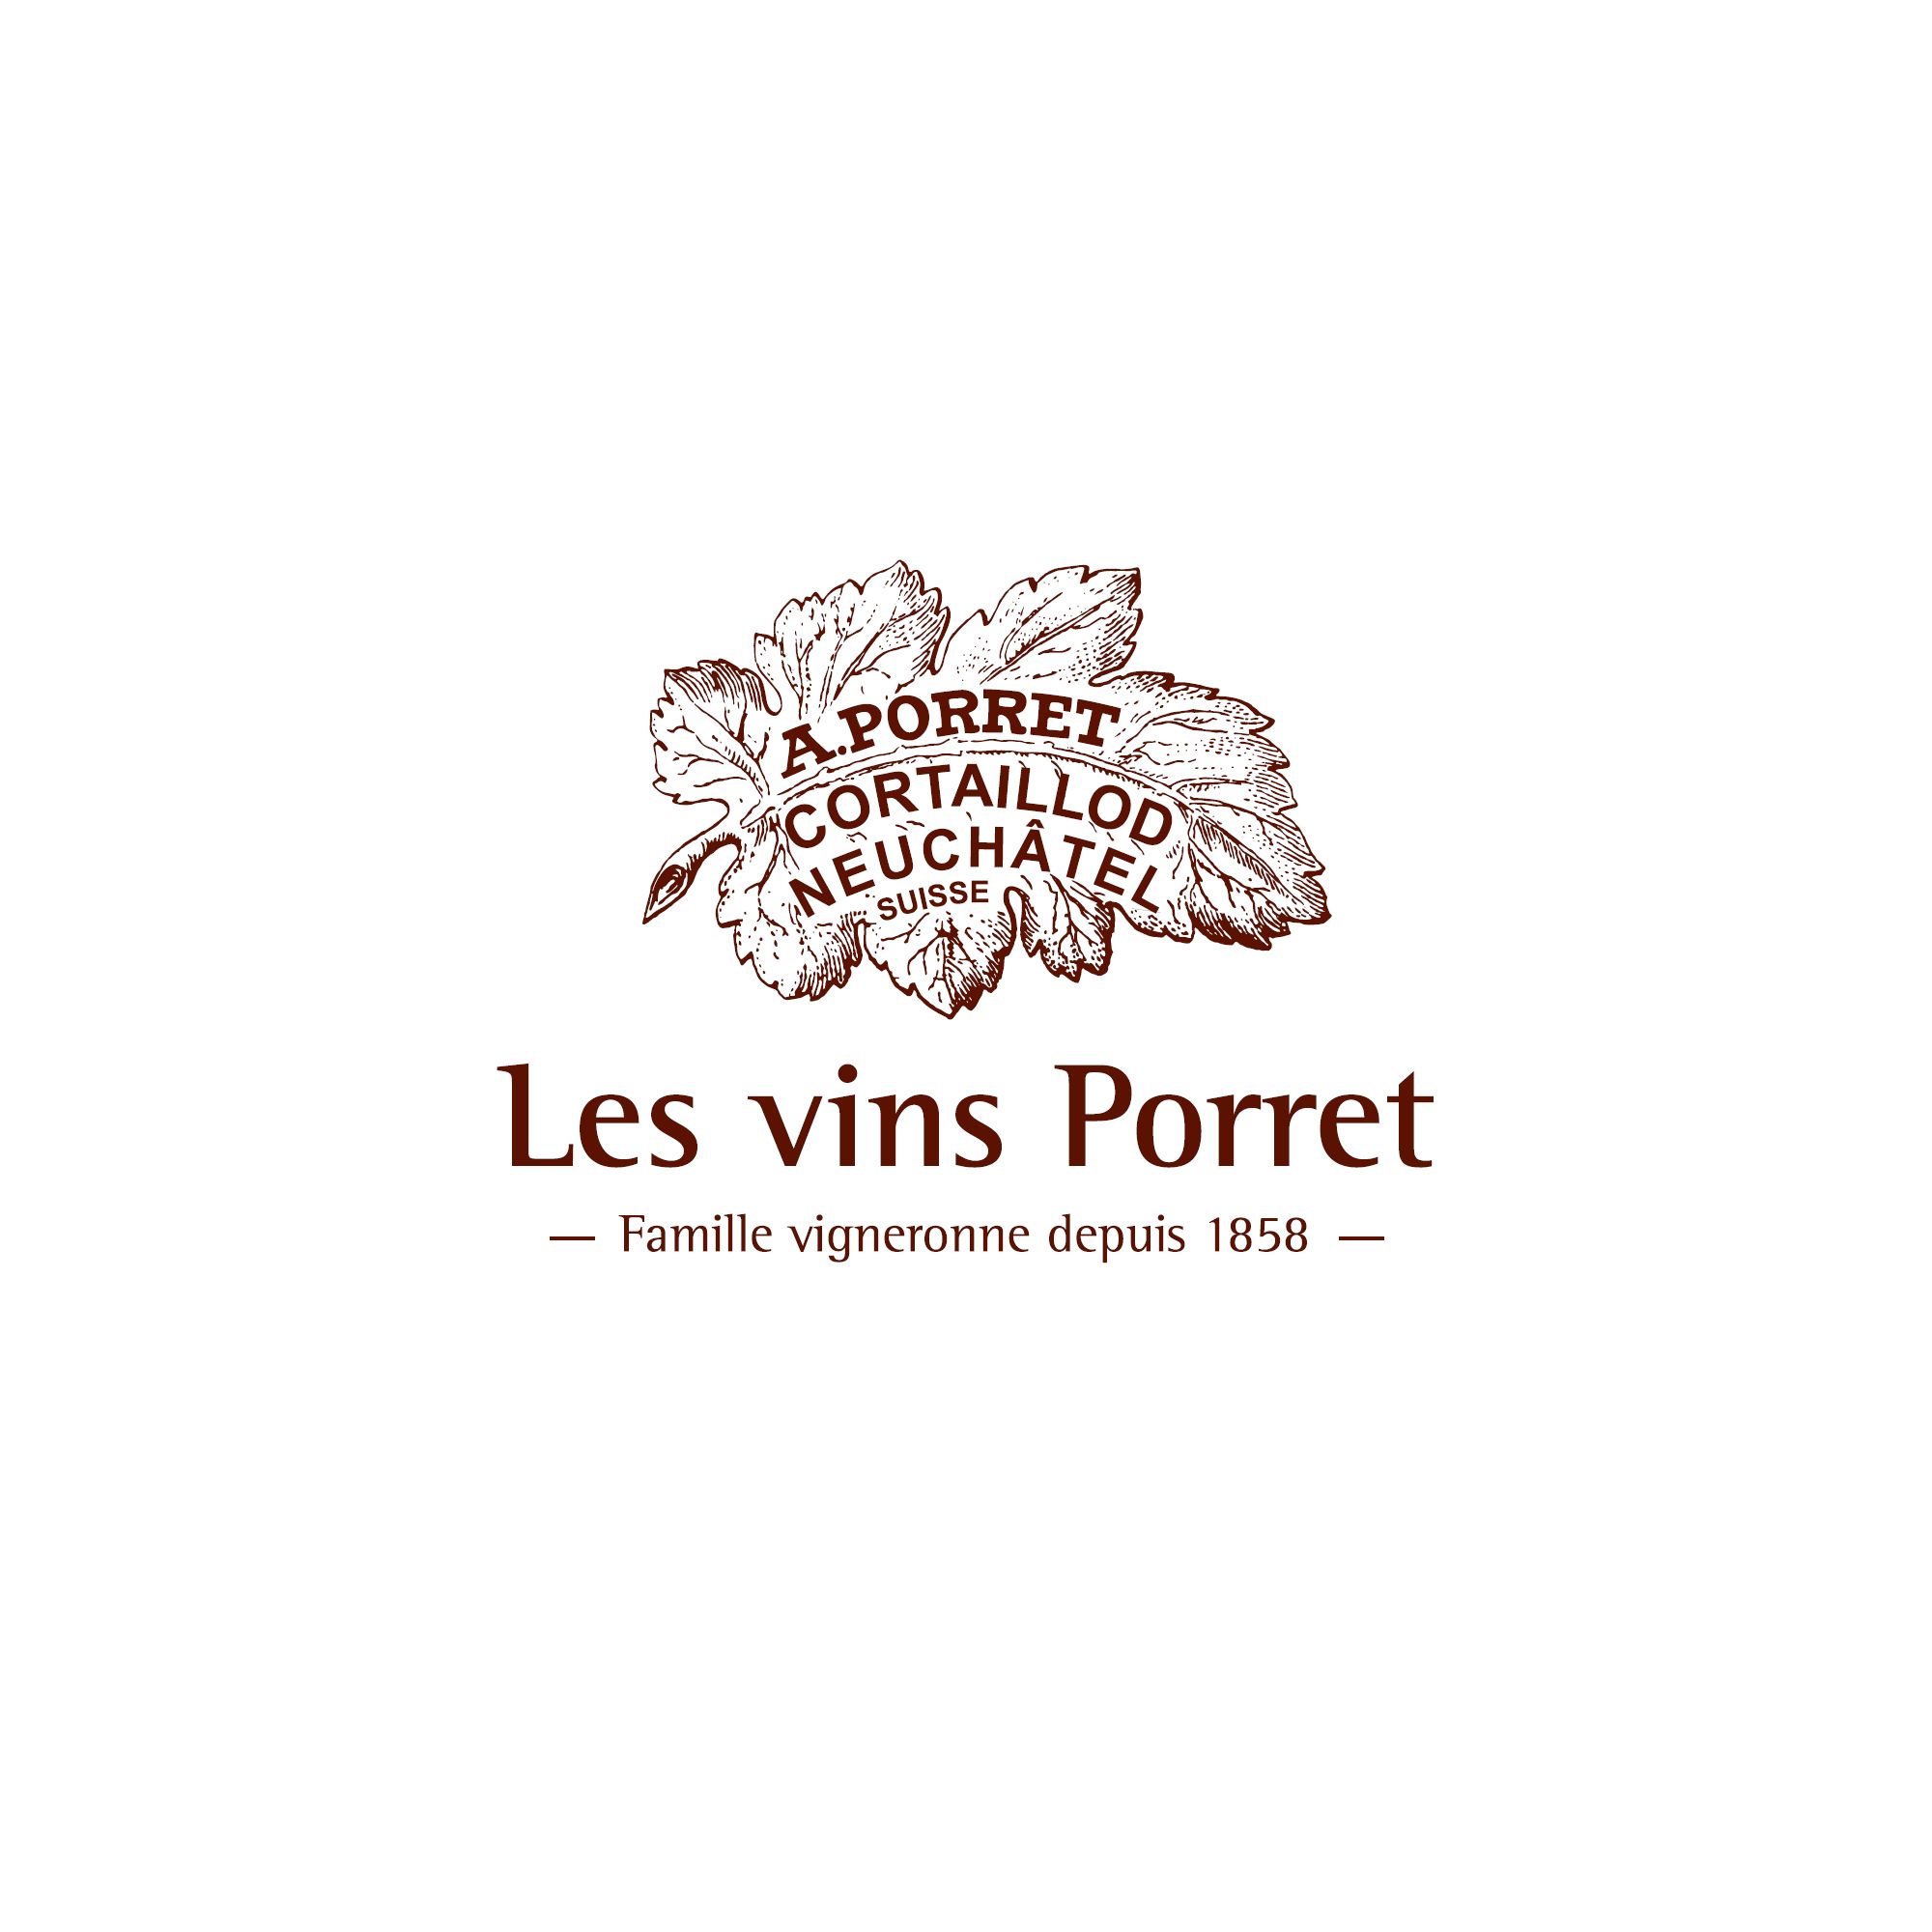 Les vins Porret